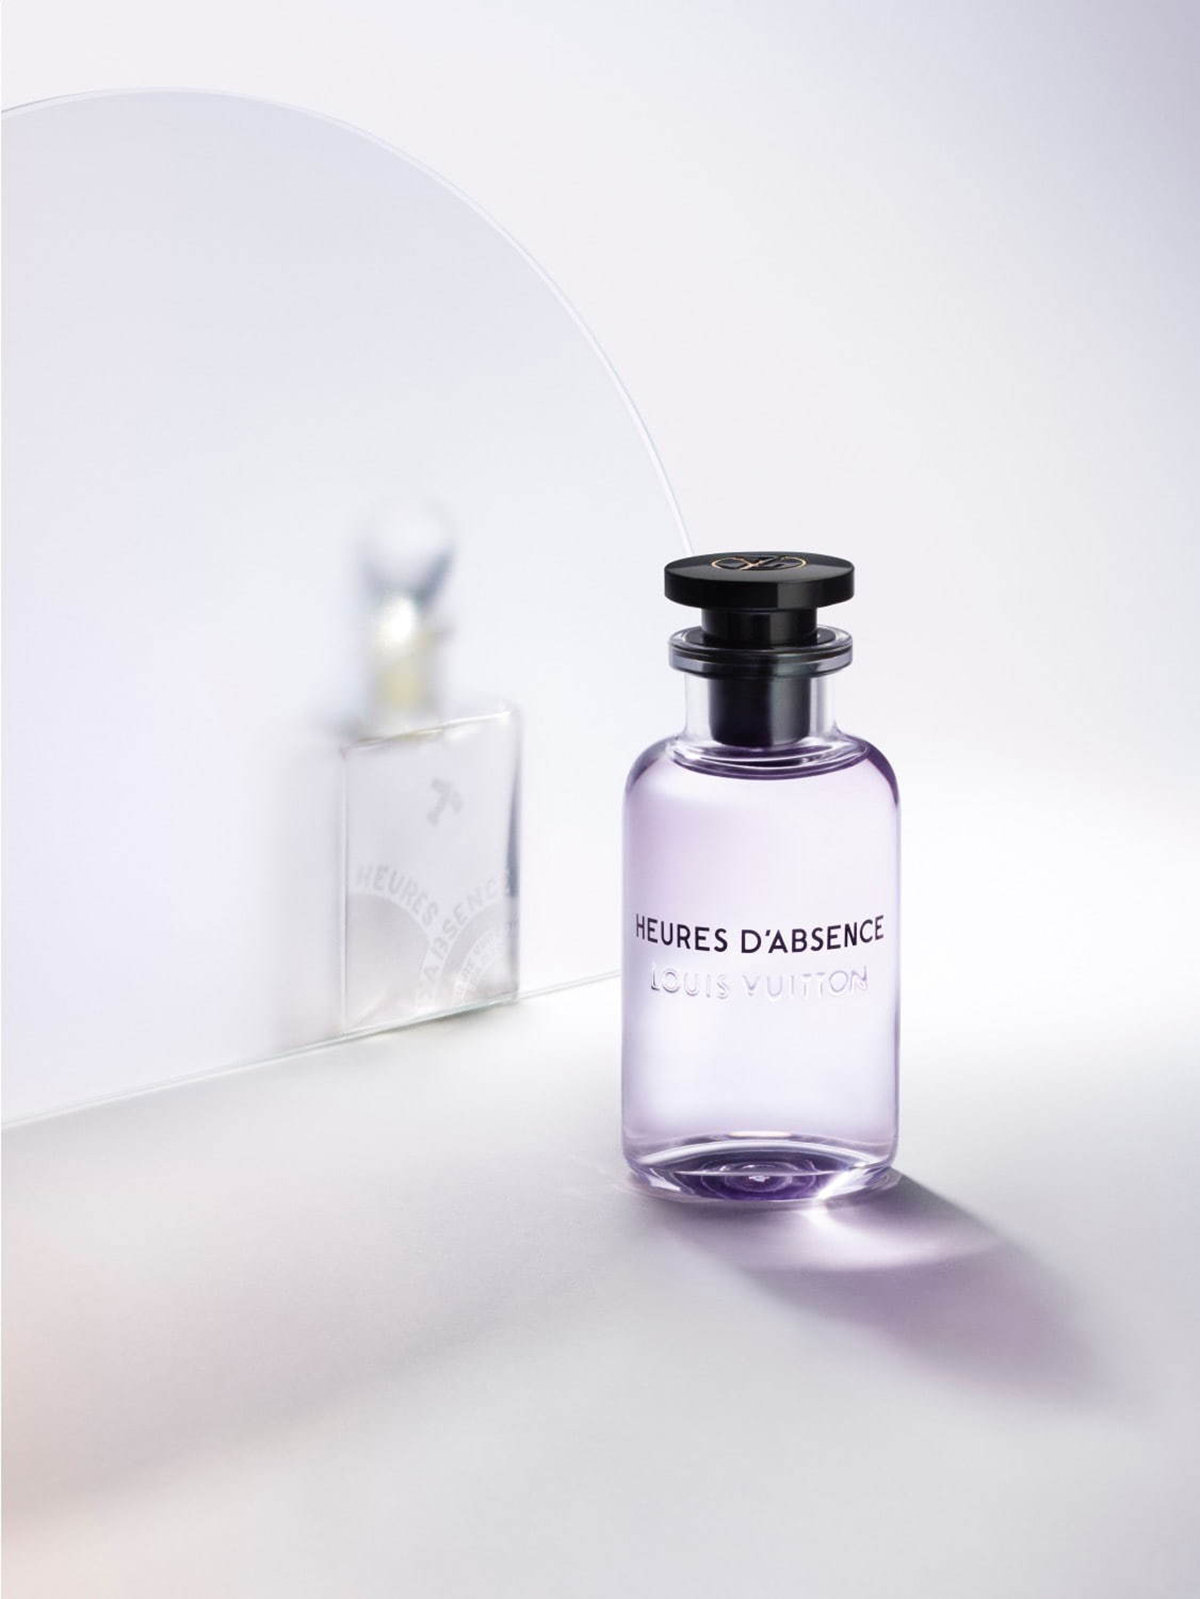 LOUIS VUITTON L'IMMENSITÉ Eau de Parfum for Men & Women, Brand New Sealed